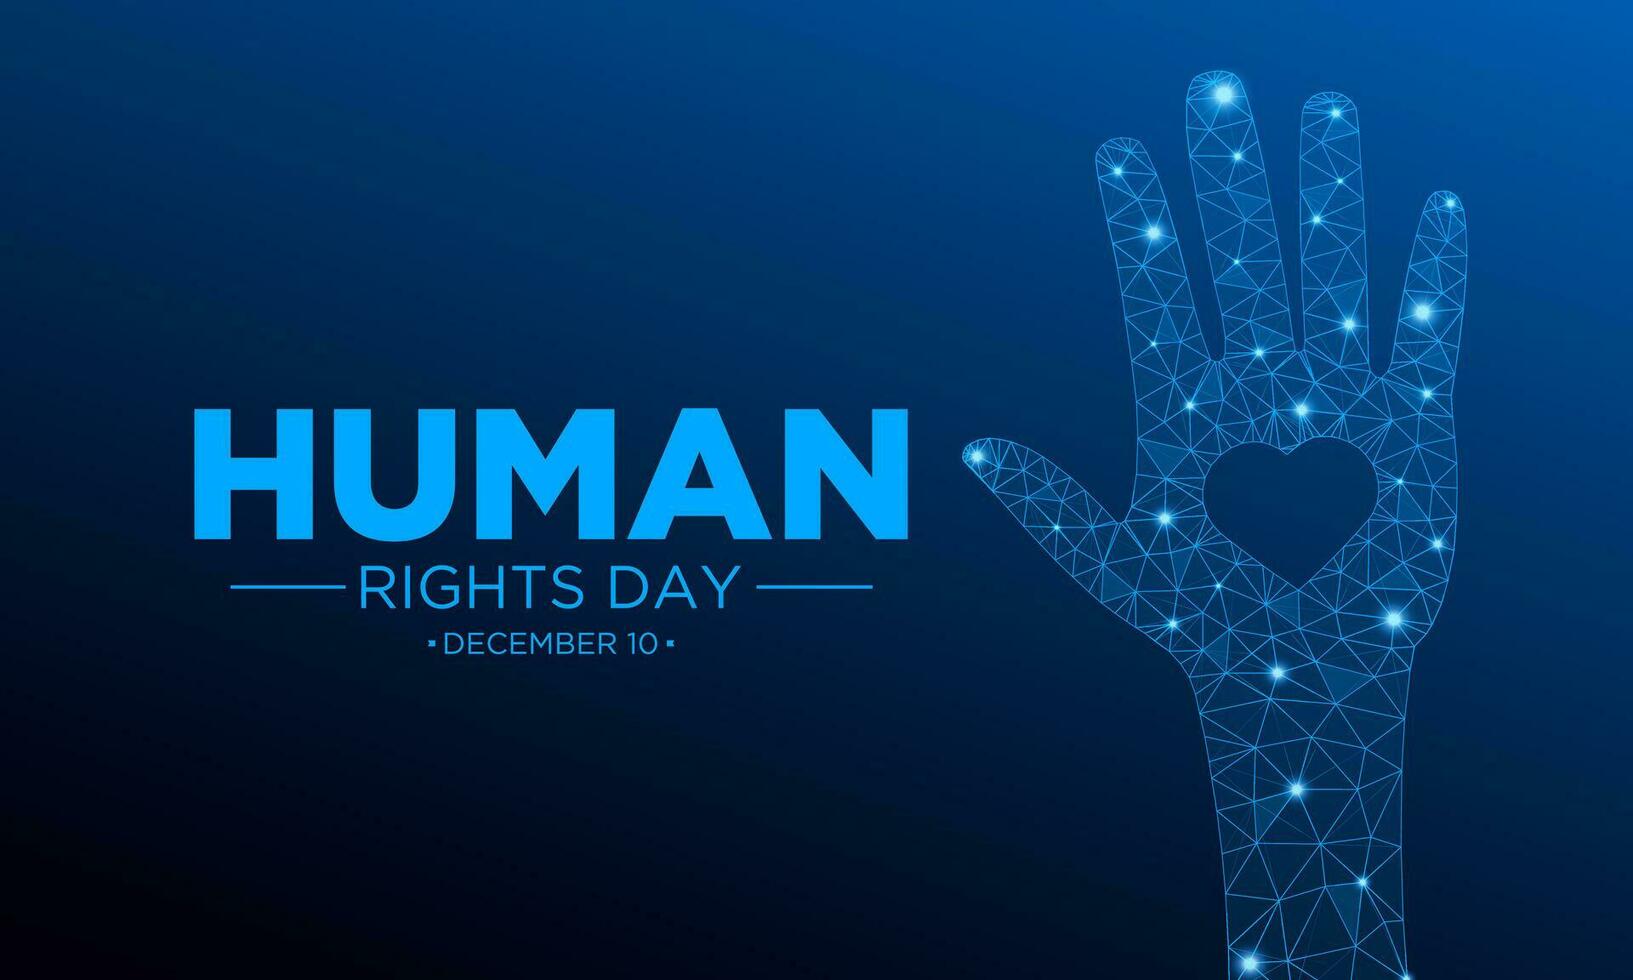 humano direitos dia é observado cada ano em dezembro 10. vetor ilustração em a tema do internacional humano direitos dia. modelo para bandeira, cumprimento cartão, poster com fundo.